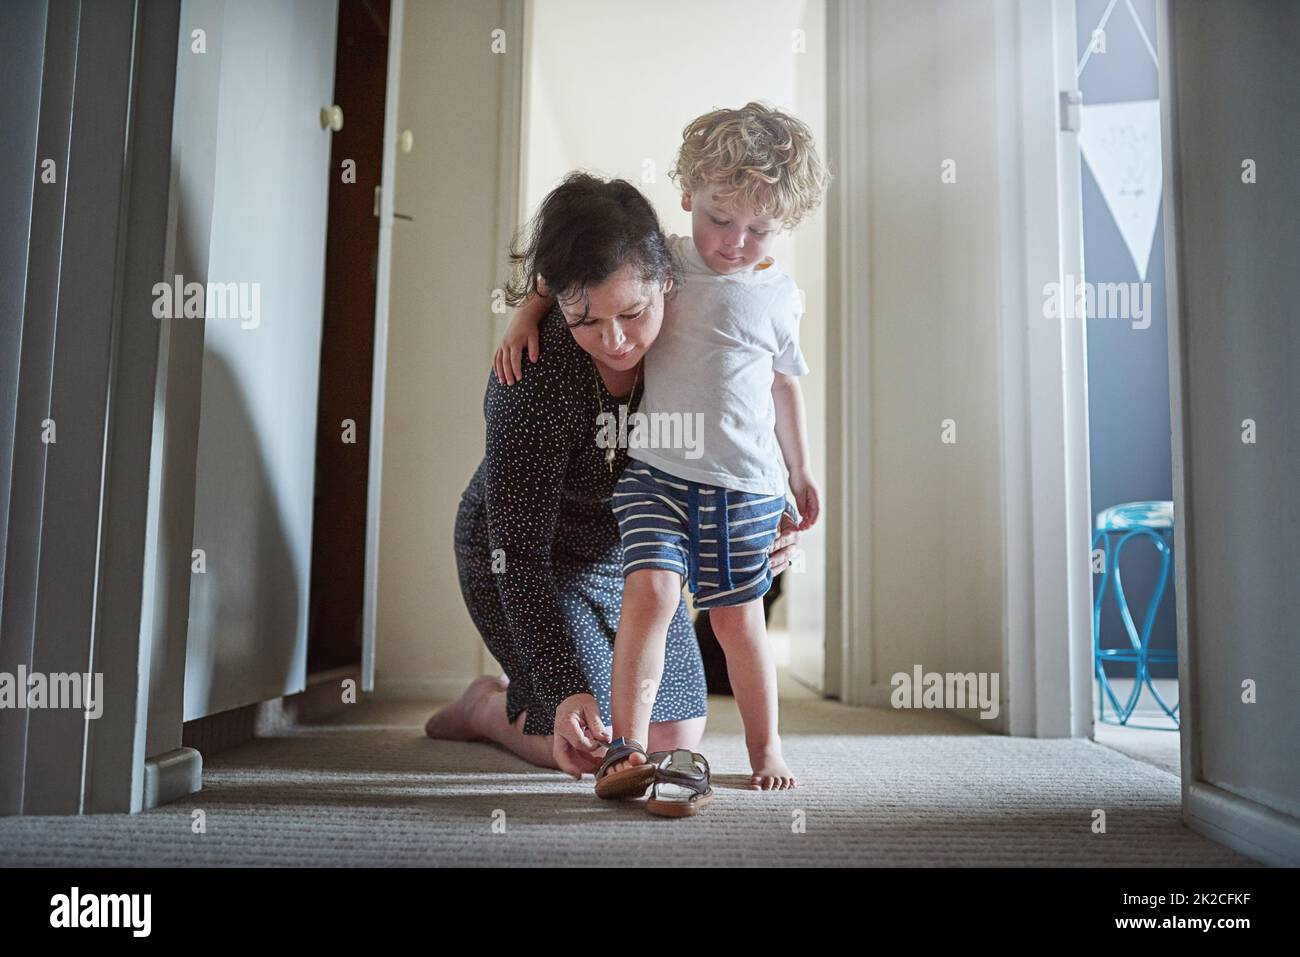 Machen Sie sich bereit für den Spaß vor Ihnen. Aufnahme einer Mutter, die ihrem Sohn hilft, seine Schuhe zu Hause anzuziehen. Stockfoto